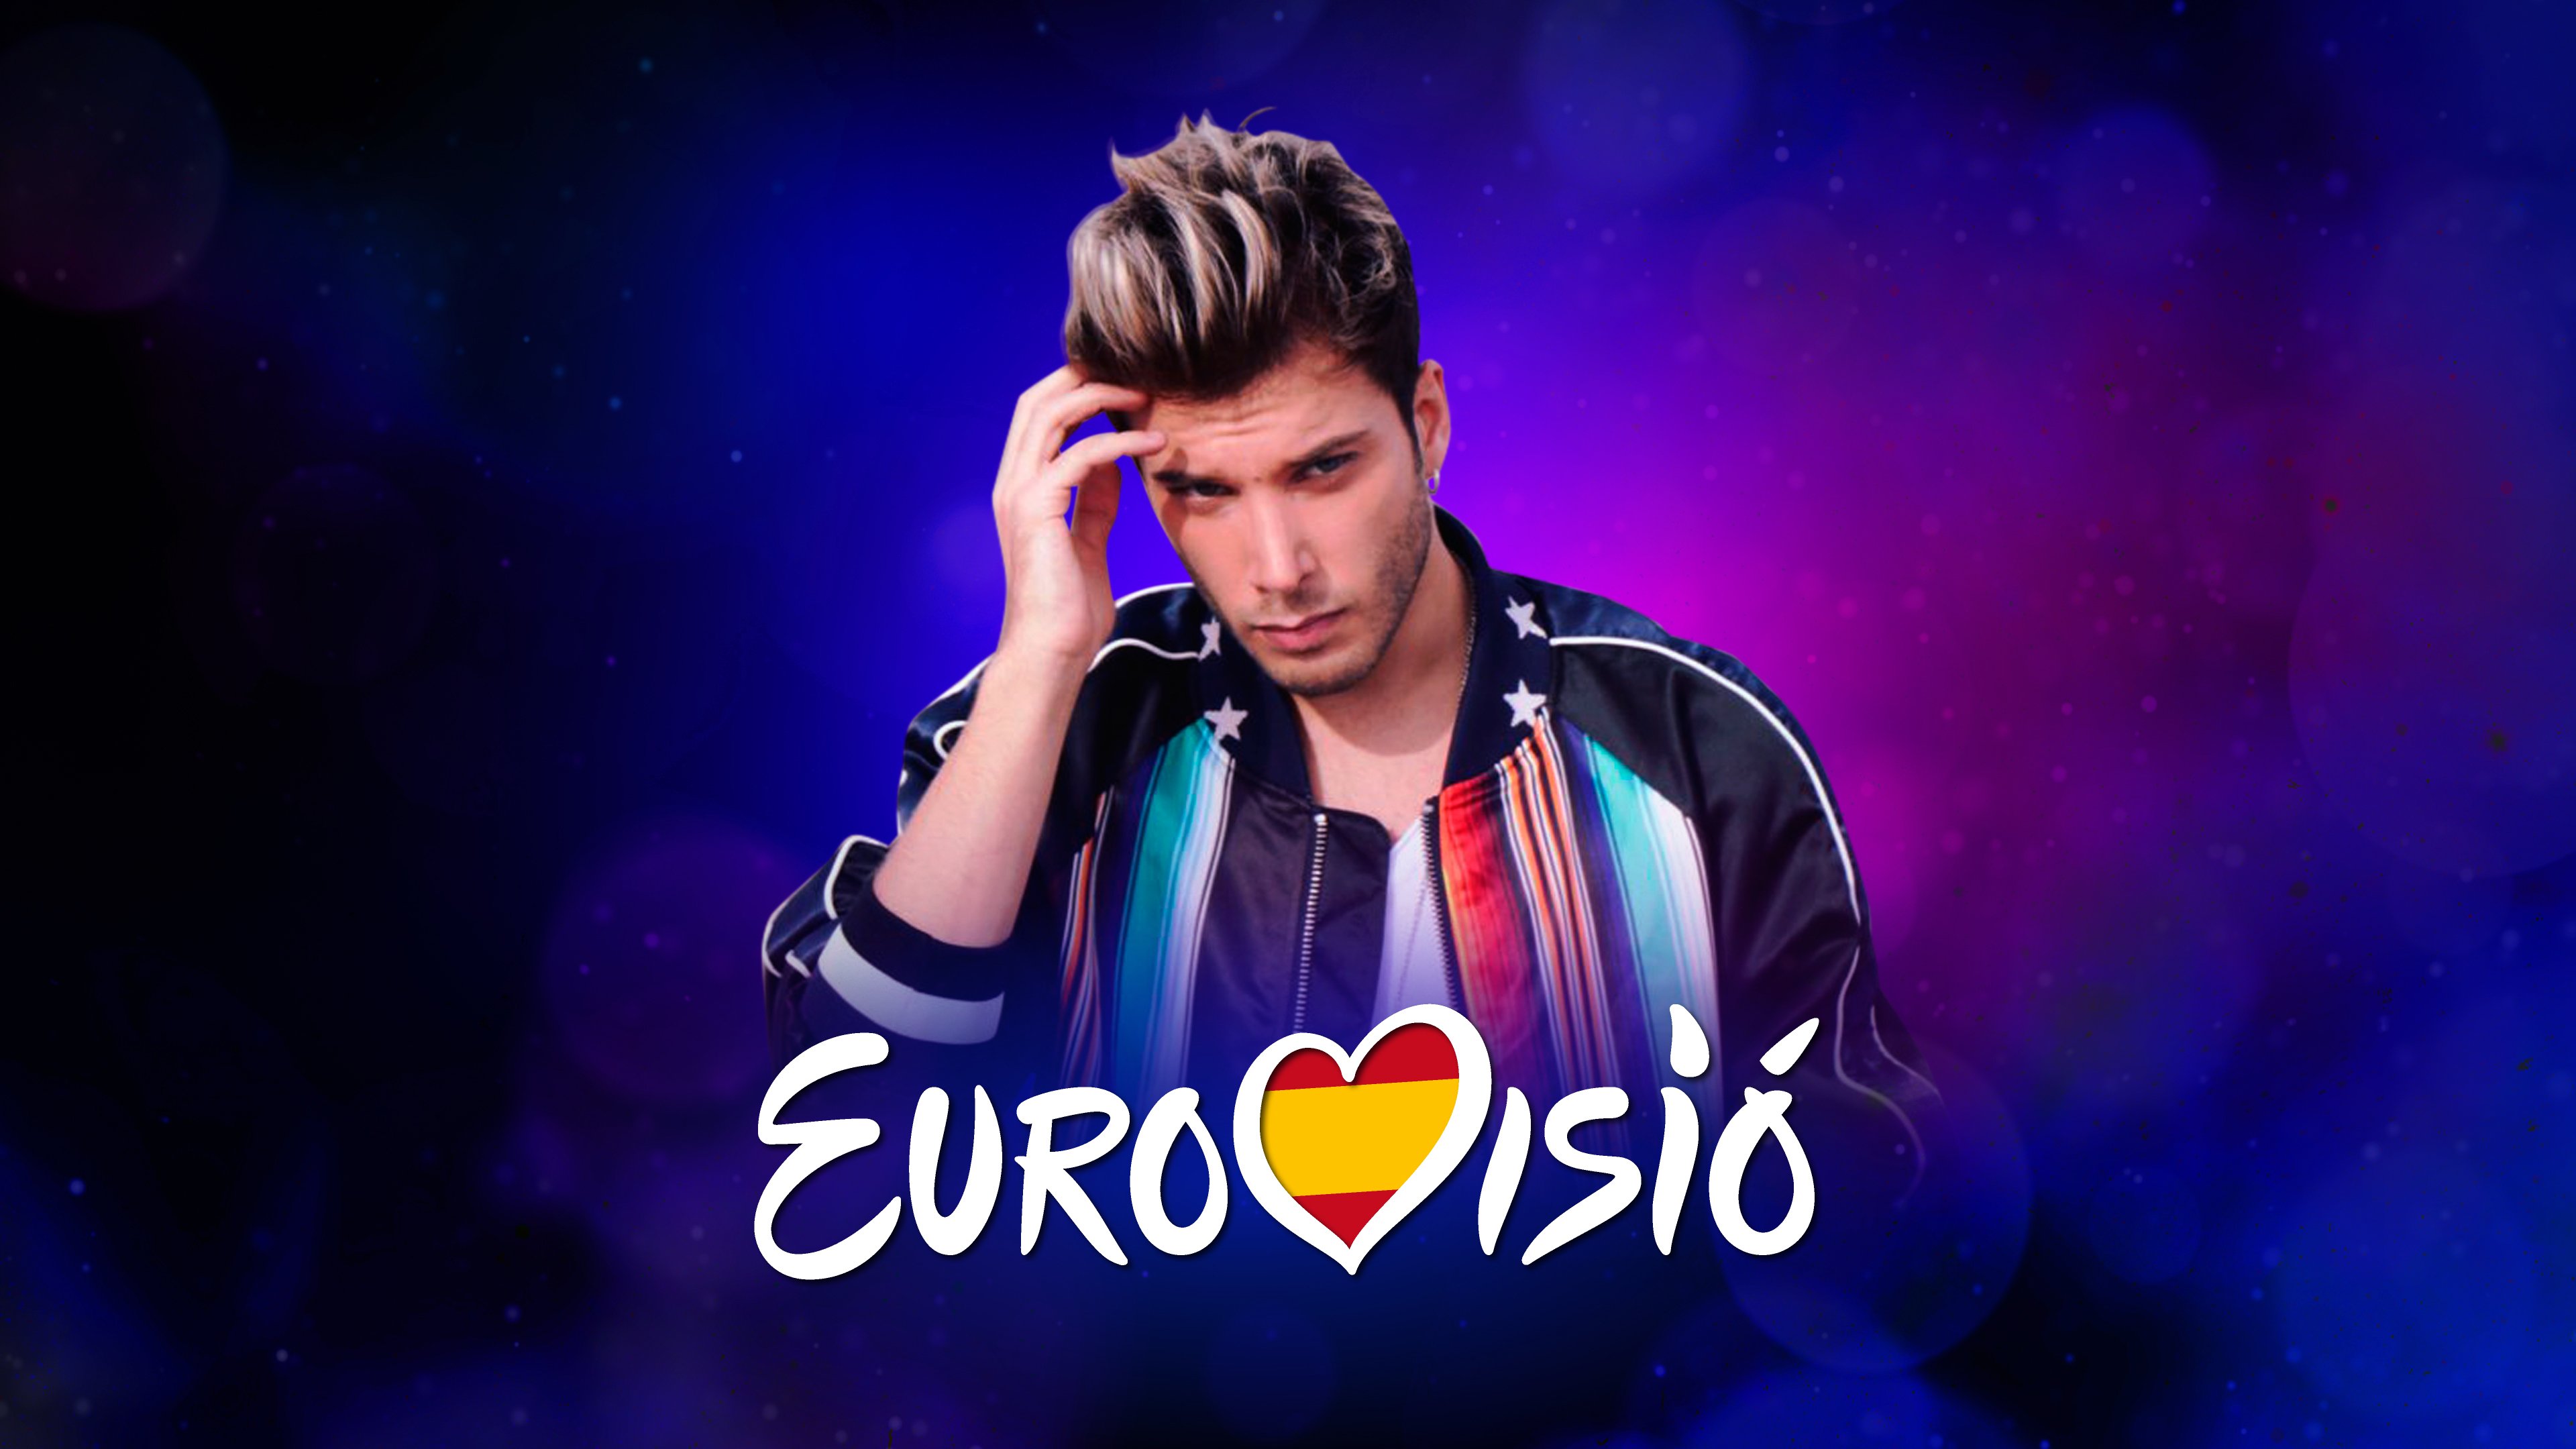 Així sona “Universo”, la cançó de Blas Cantó per a Eurovisió 2020